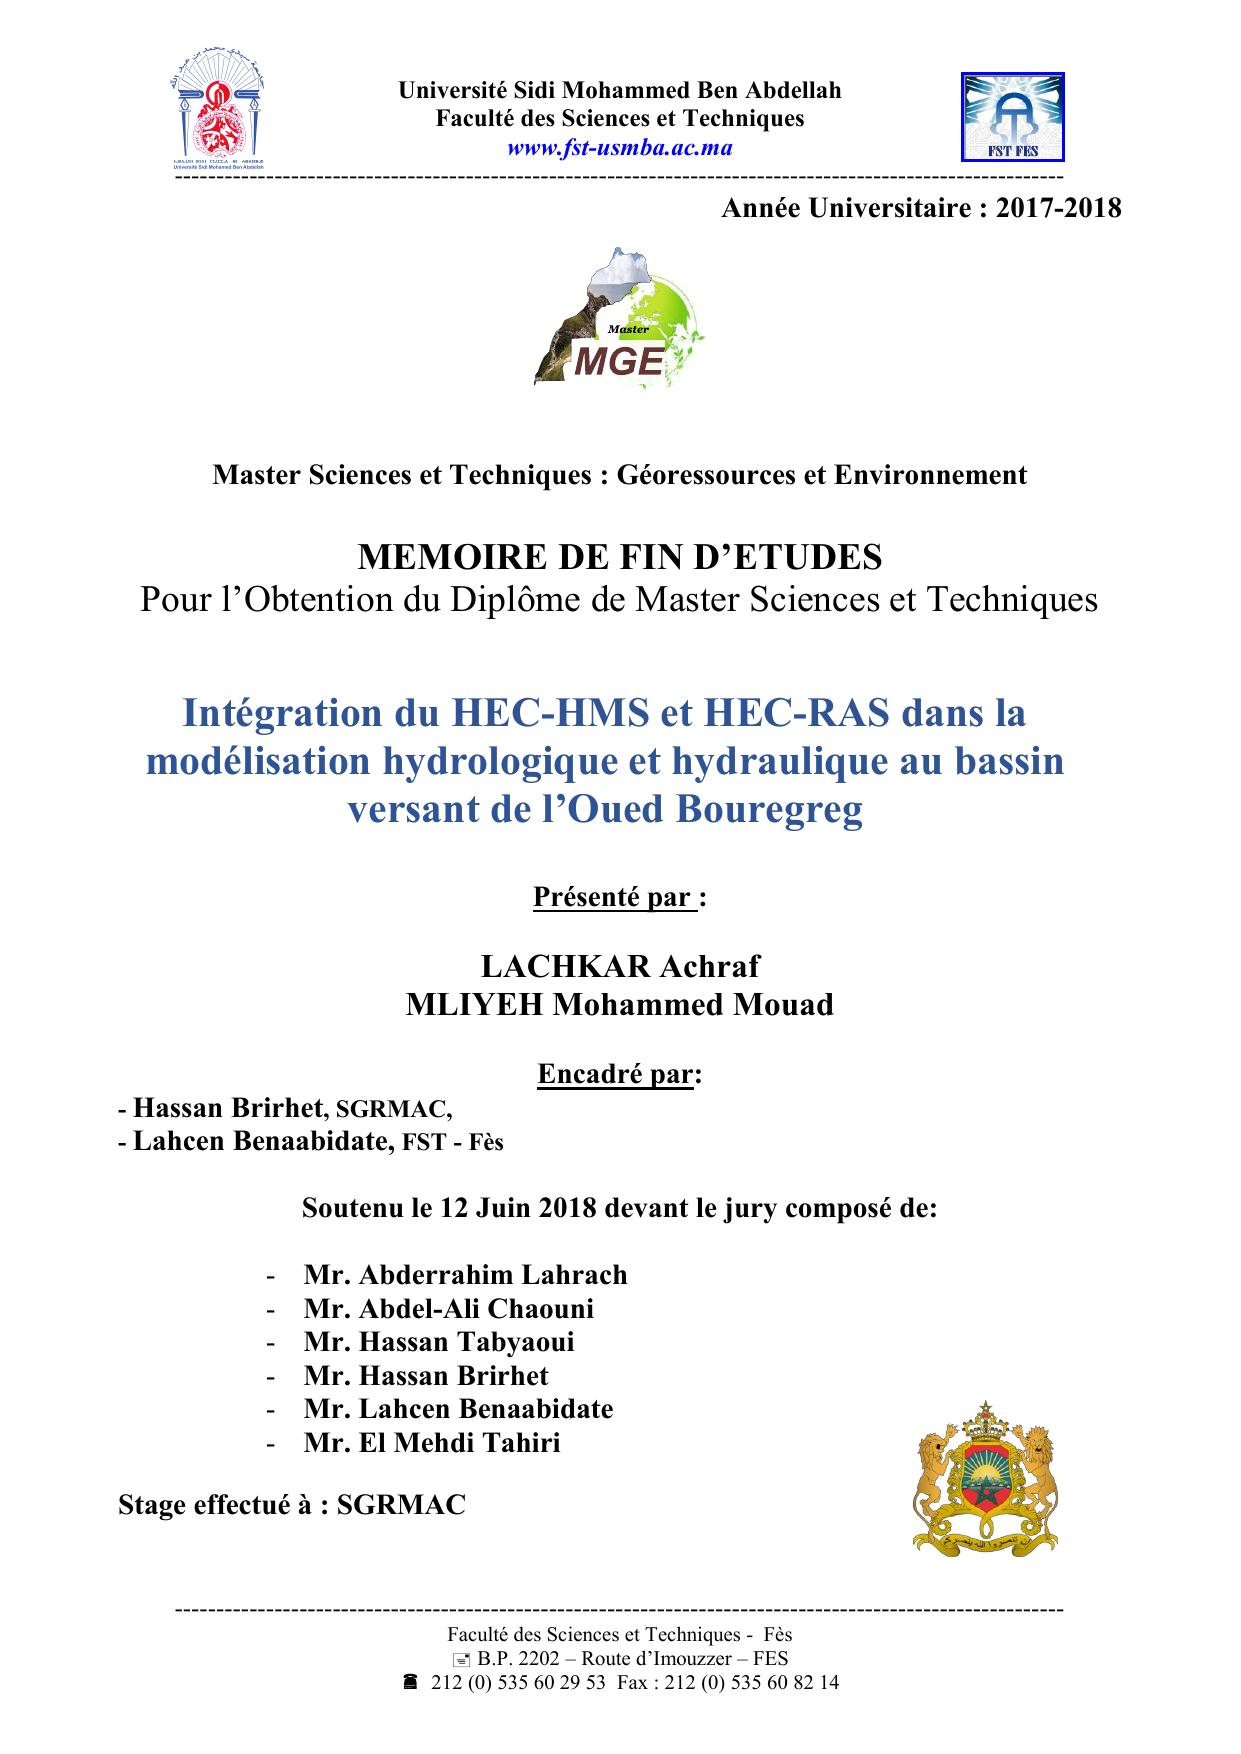 Intégration du HEC-HMS et HEC-RAS dans la modélisation hydrologique et hydraulique au bassin versant de l’Oued Bouregreg